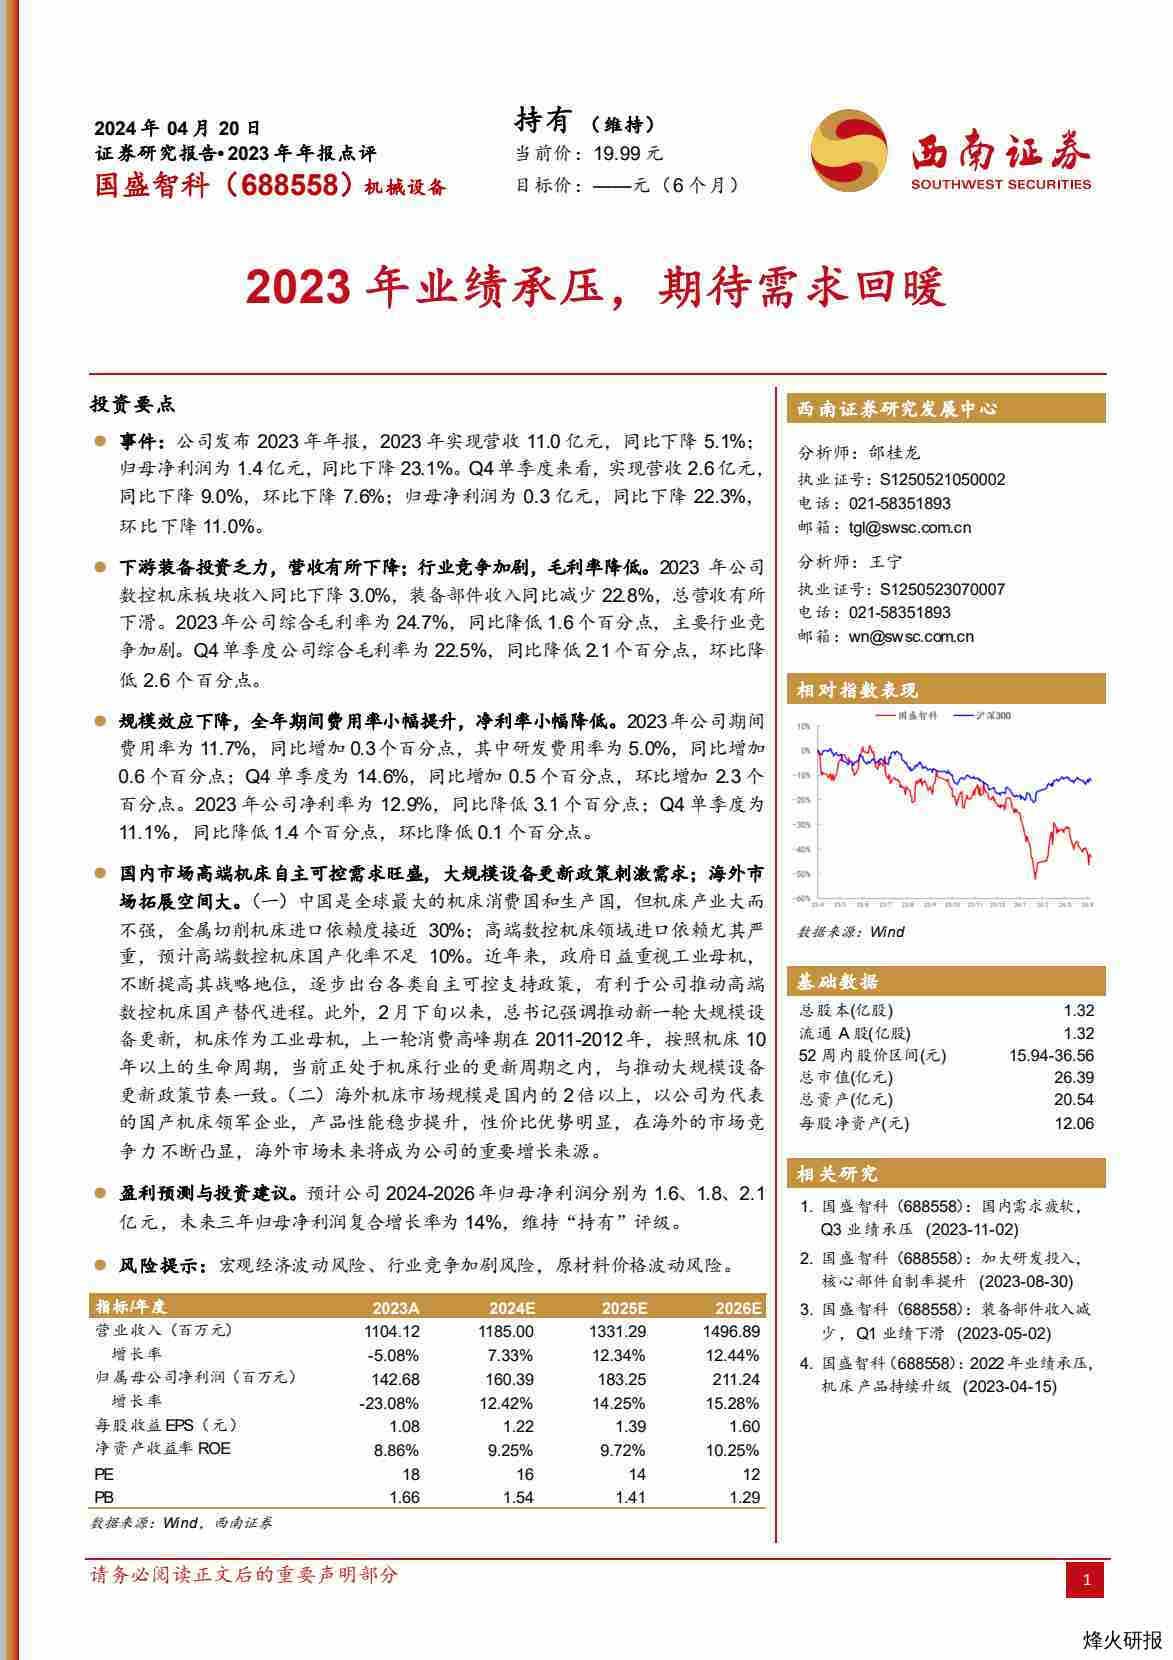 【西南证券】2023年业绩承压，期待需求回暖.pdf-第一页